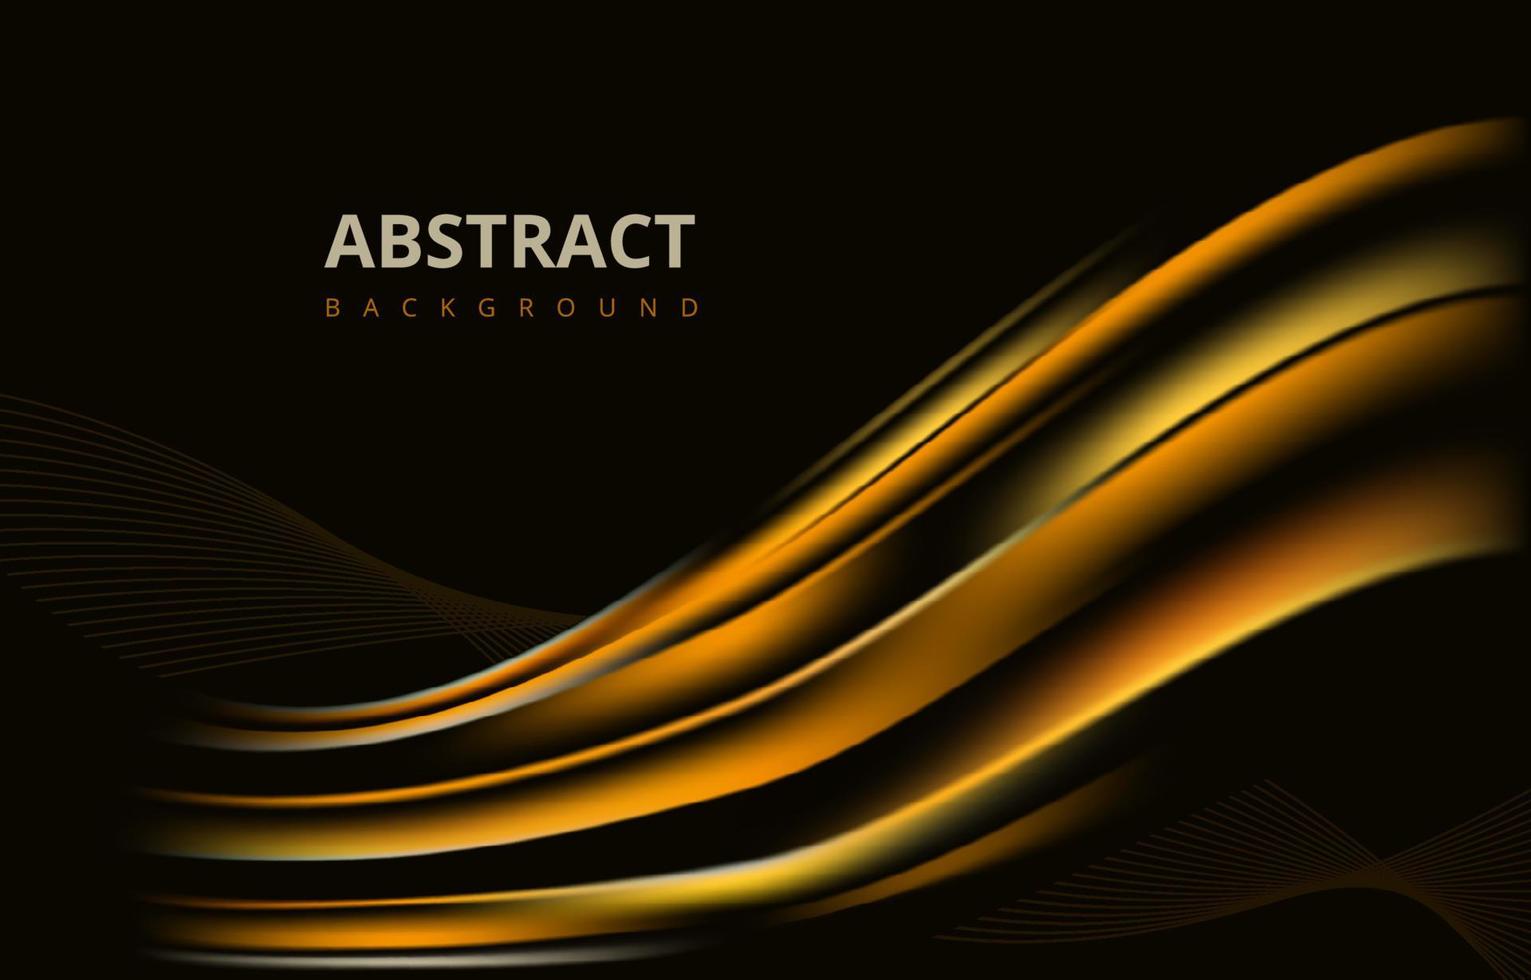 Diseño gráfico del papel pintado del fondo de la textura del gradiente de la onda moderna abstracta dorada oscura vector